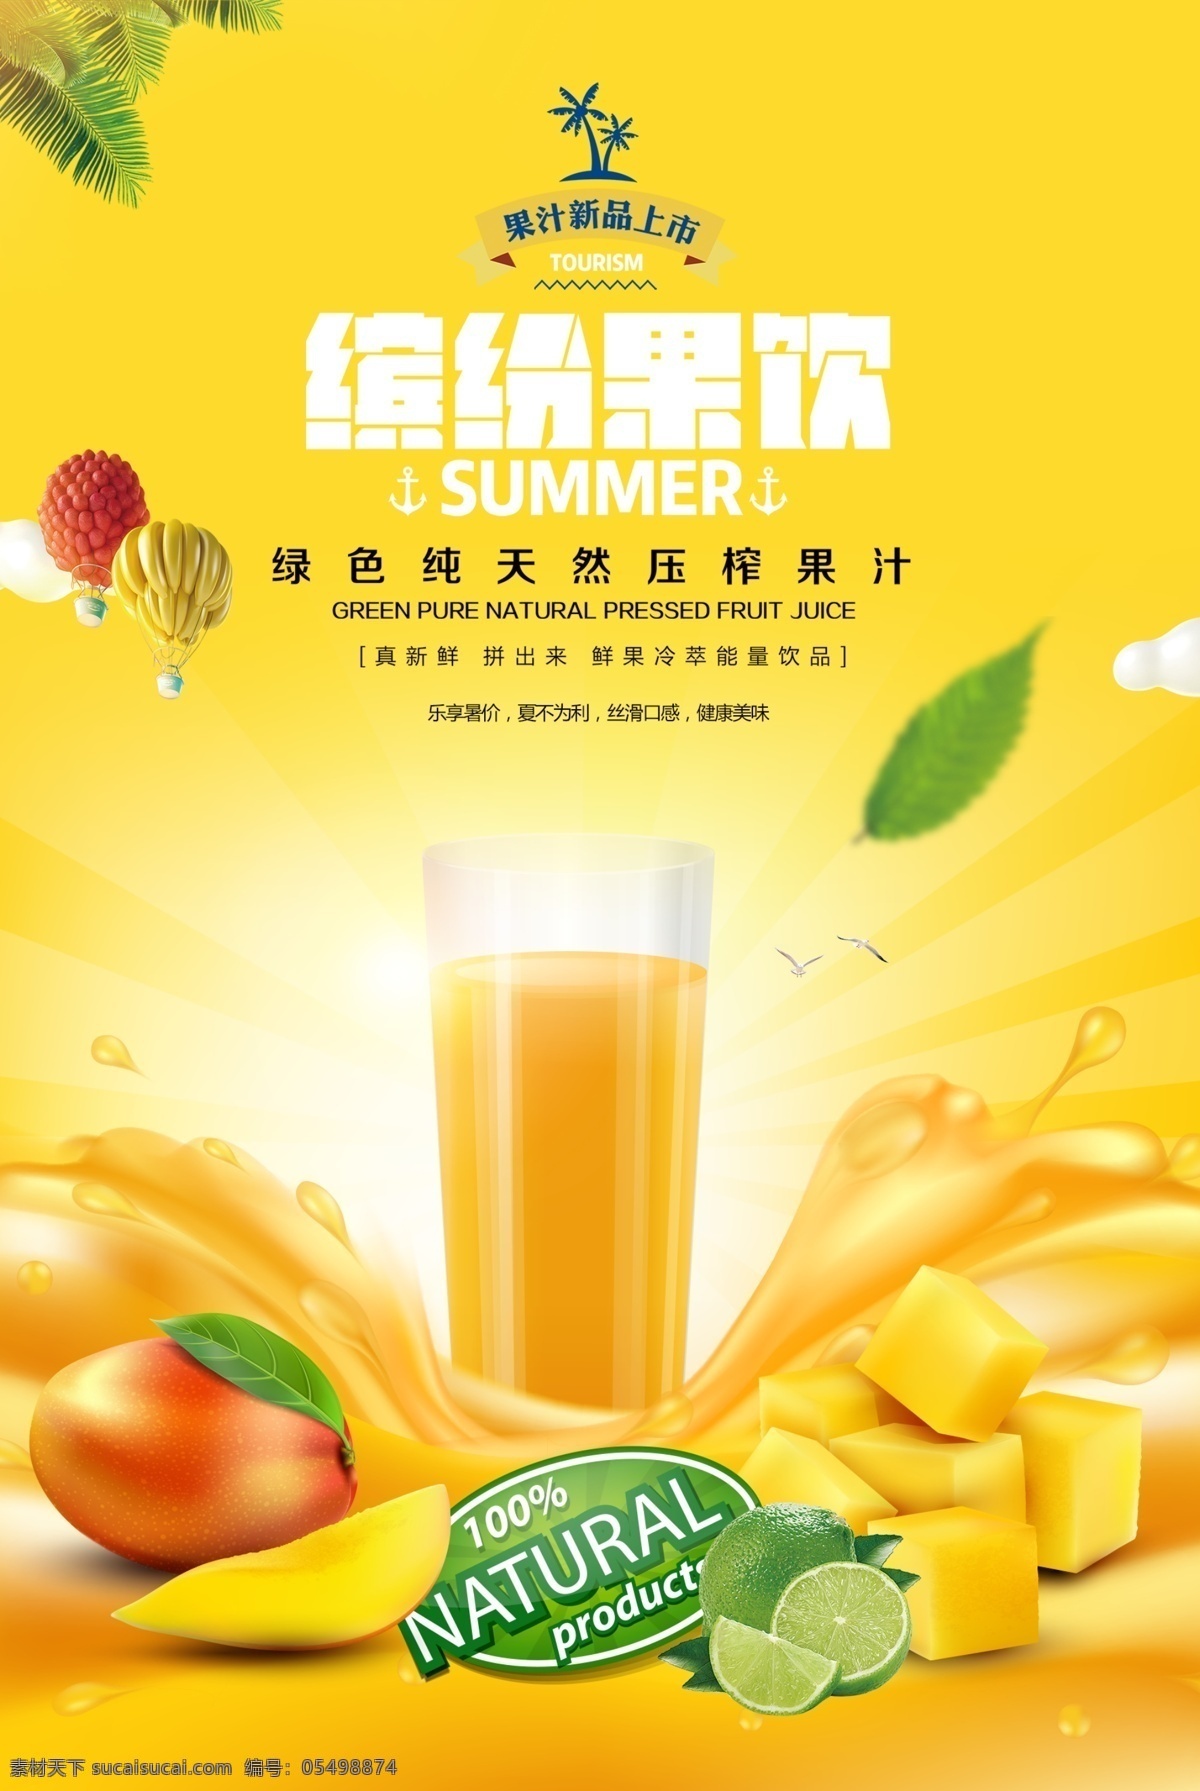 夏季 饮品 店 新鲜 果汁 宣传海报 夏季饮品店 新鲜果汁 果汁饮品 饮料 缤纷果饮果汁 分层